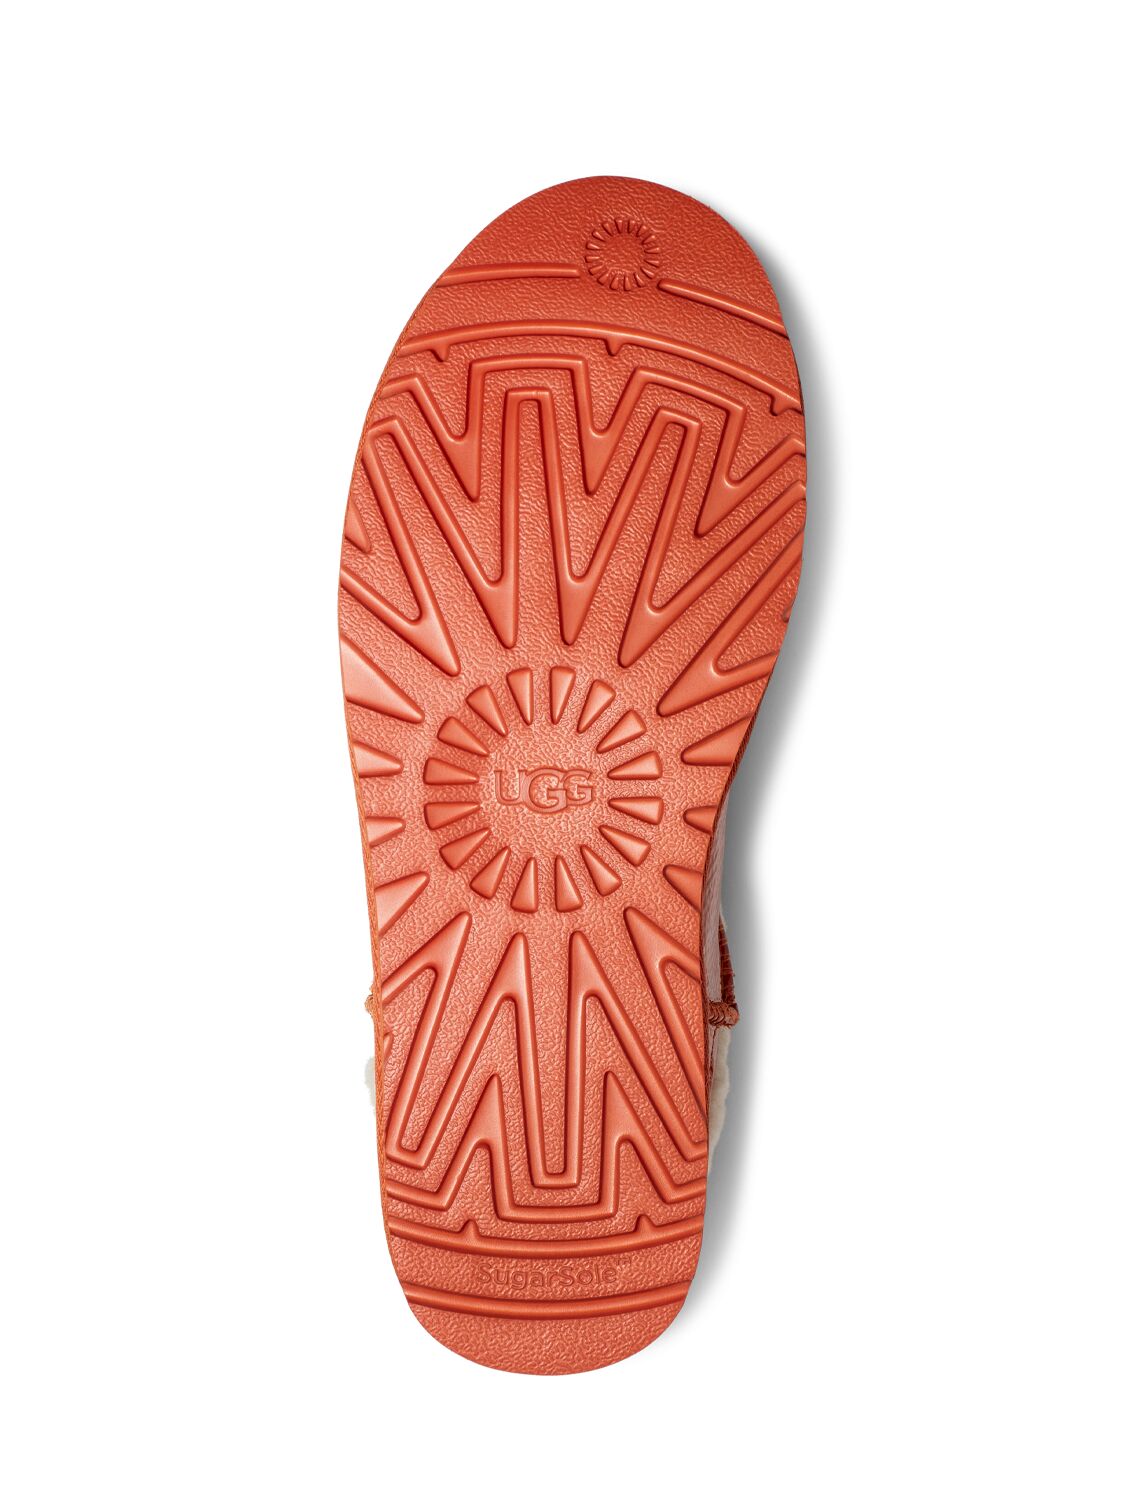 Shop Ugg X Telfar 10mm Telfar Mini Crinkled Patent Boots In Spicy Pumpkin